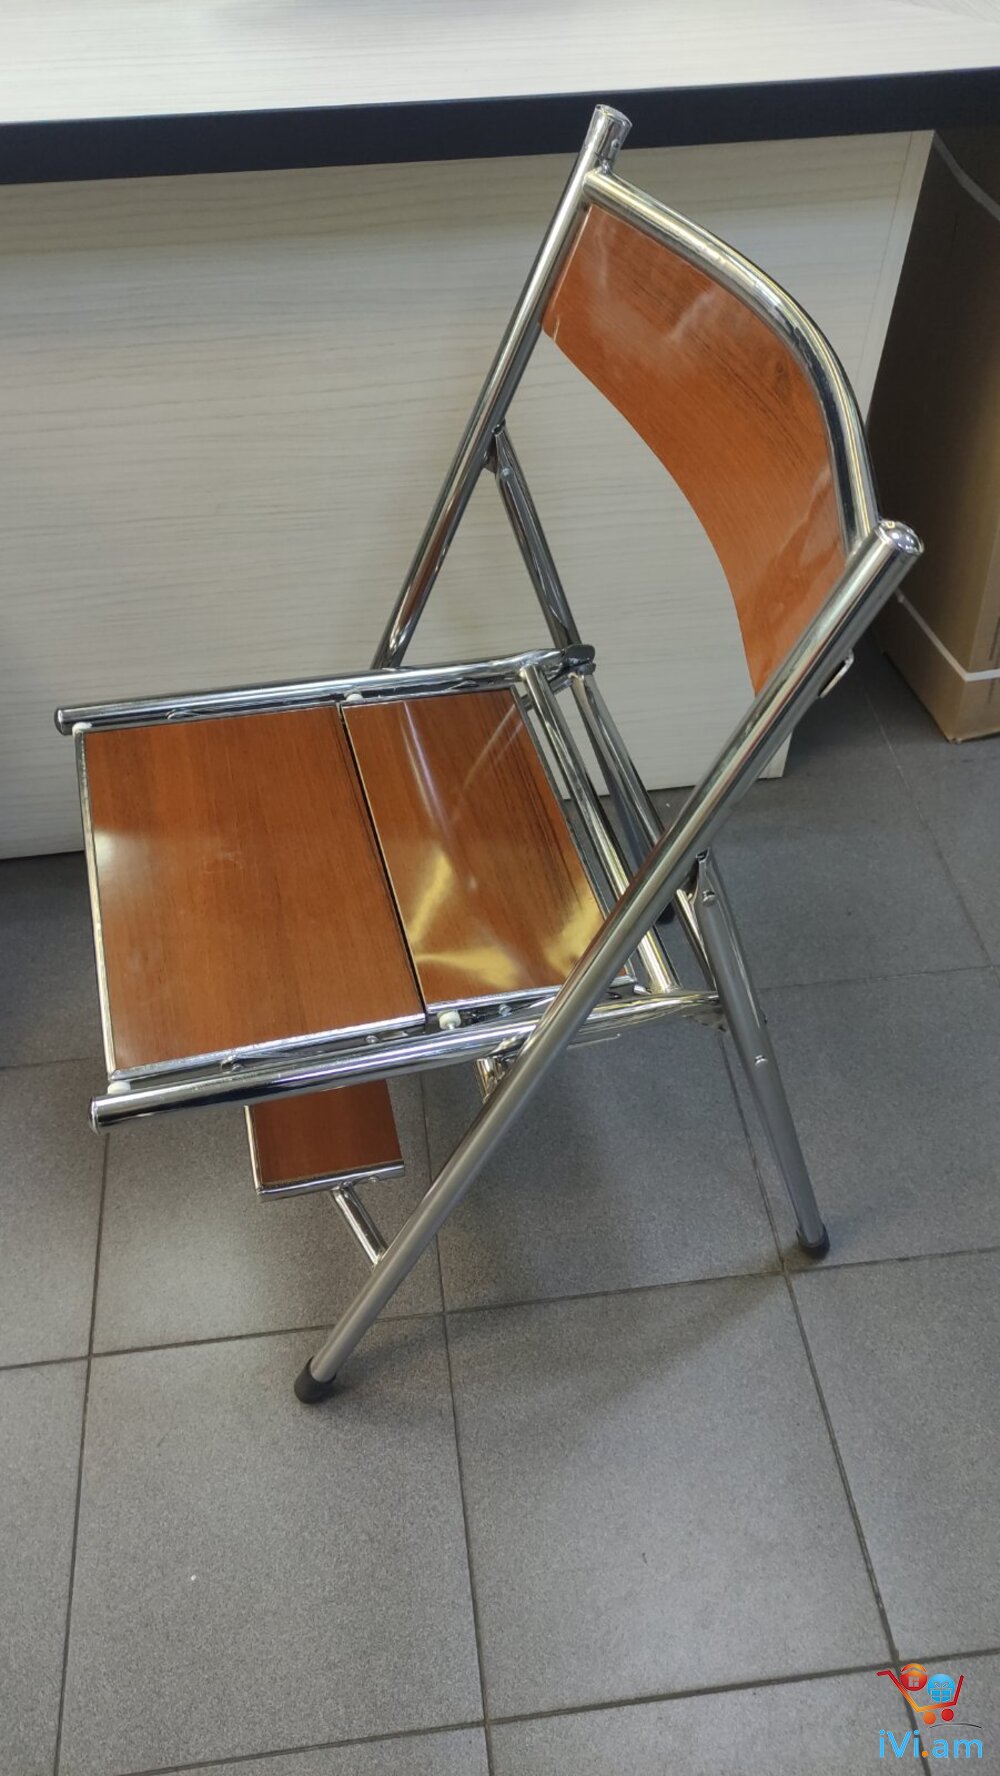 Աթոռ աստիճան, стул ступенька, chair step - Լուսանկար 1